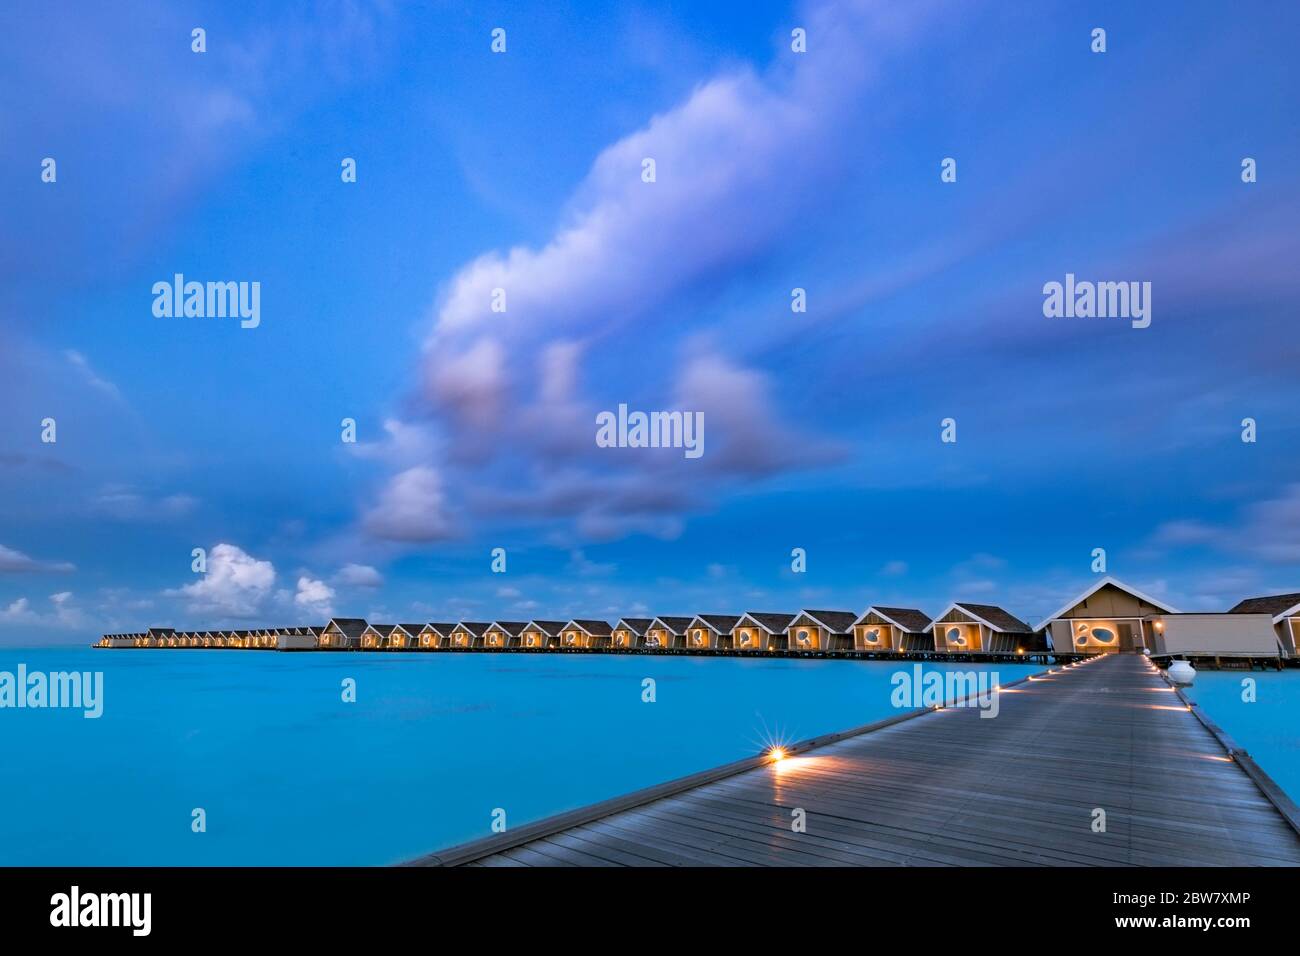 Coucher de soleil sur l'île des Maldives. Station balnéaire de bungalows d'eau à la plage des îles. Océan Indien, Maldives. Magnifique coucher de soleil, station de luxe et ciel coloré Banque D'Images